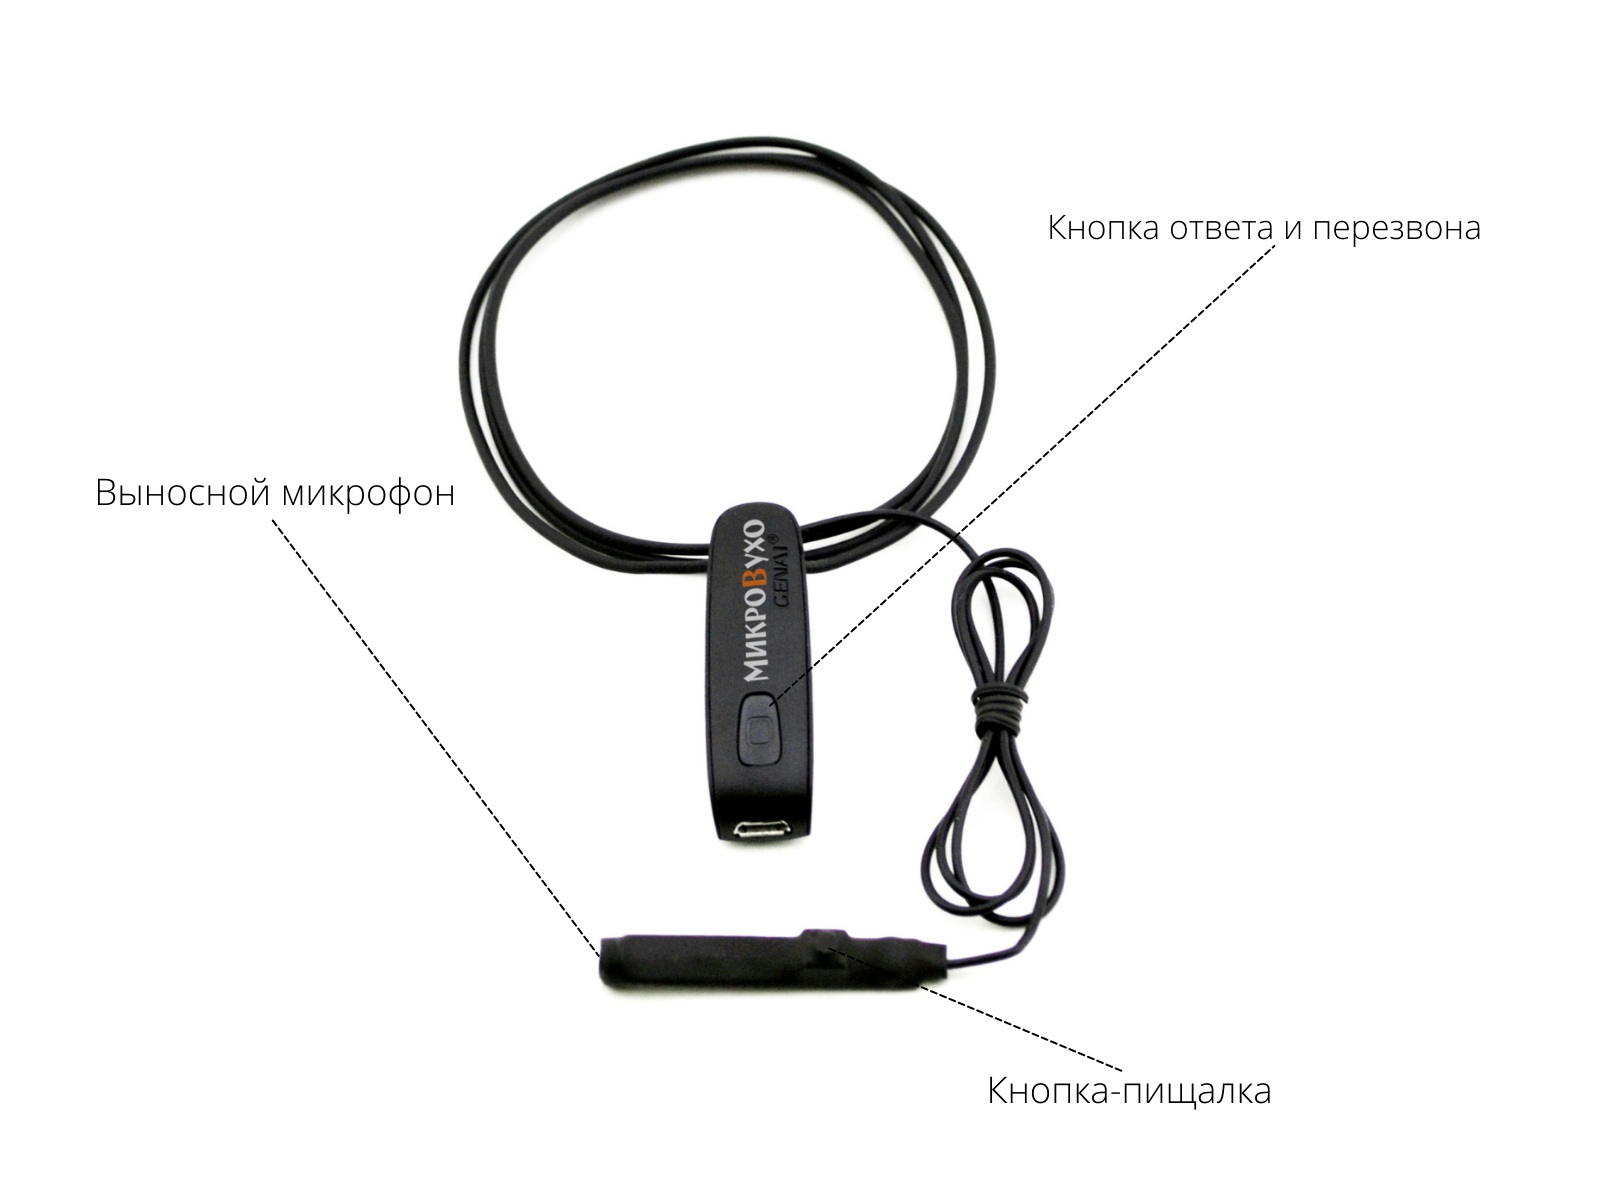 Bluetooth Basic с кнопкой-пищалкой, капсулой  K5 4 мм и магнитами 2 мм - изображение 5